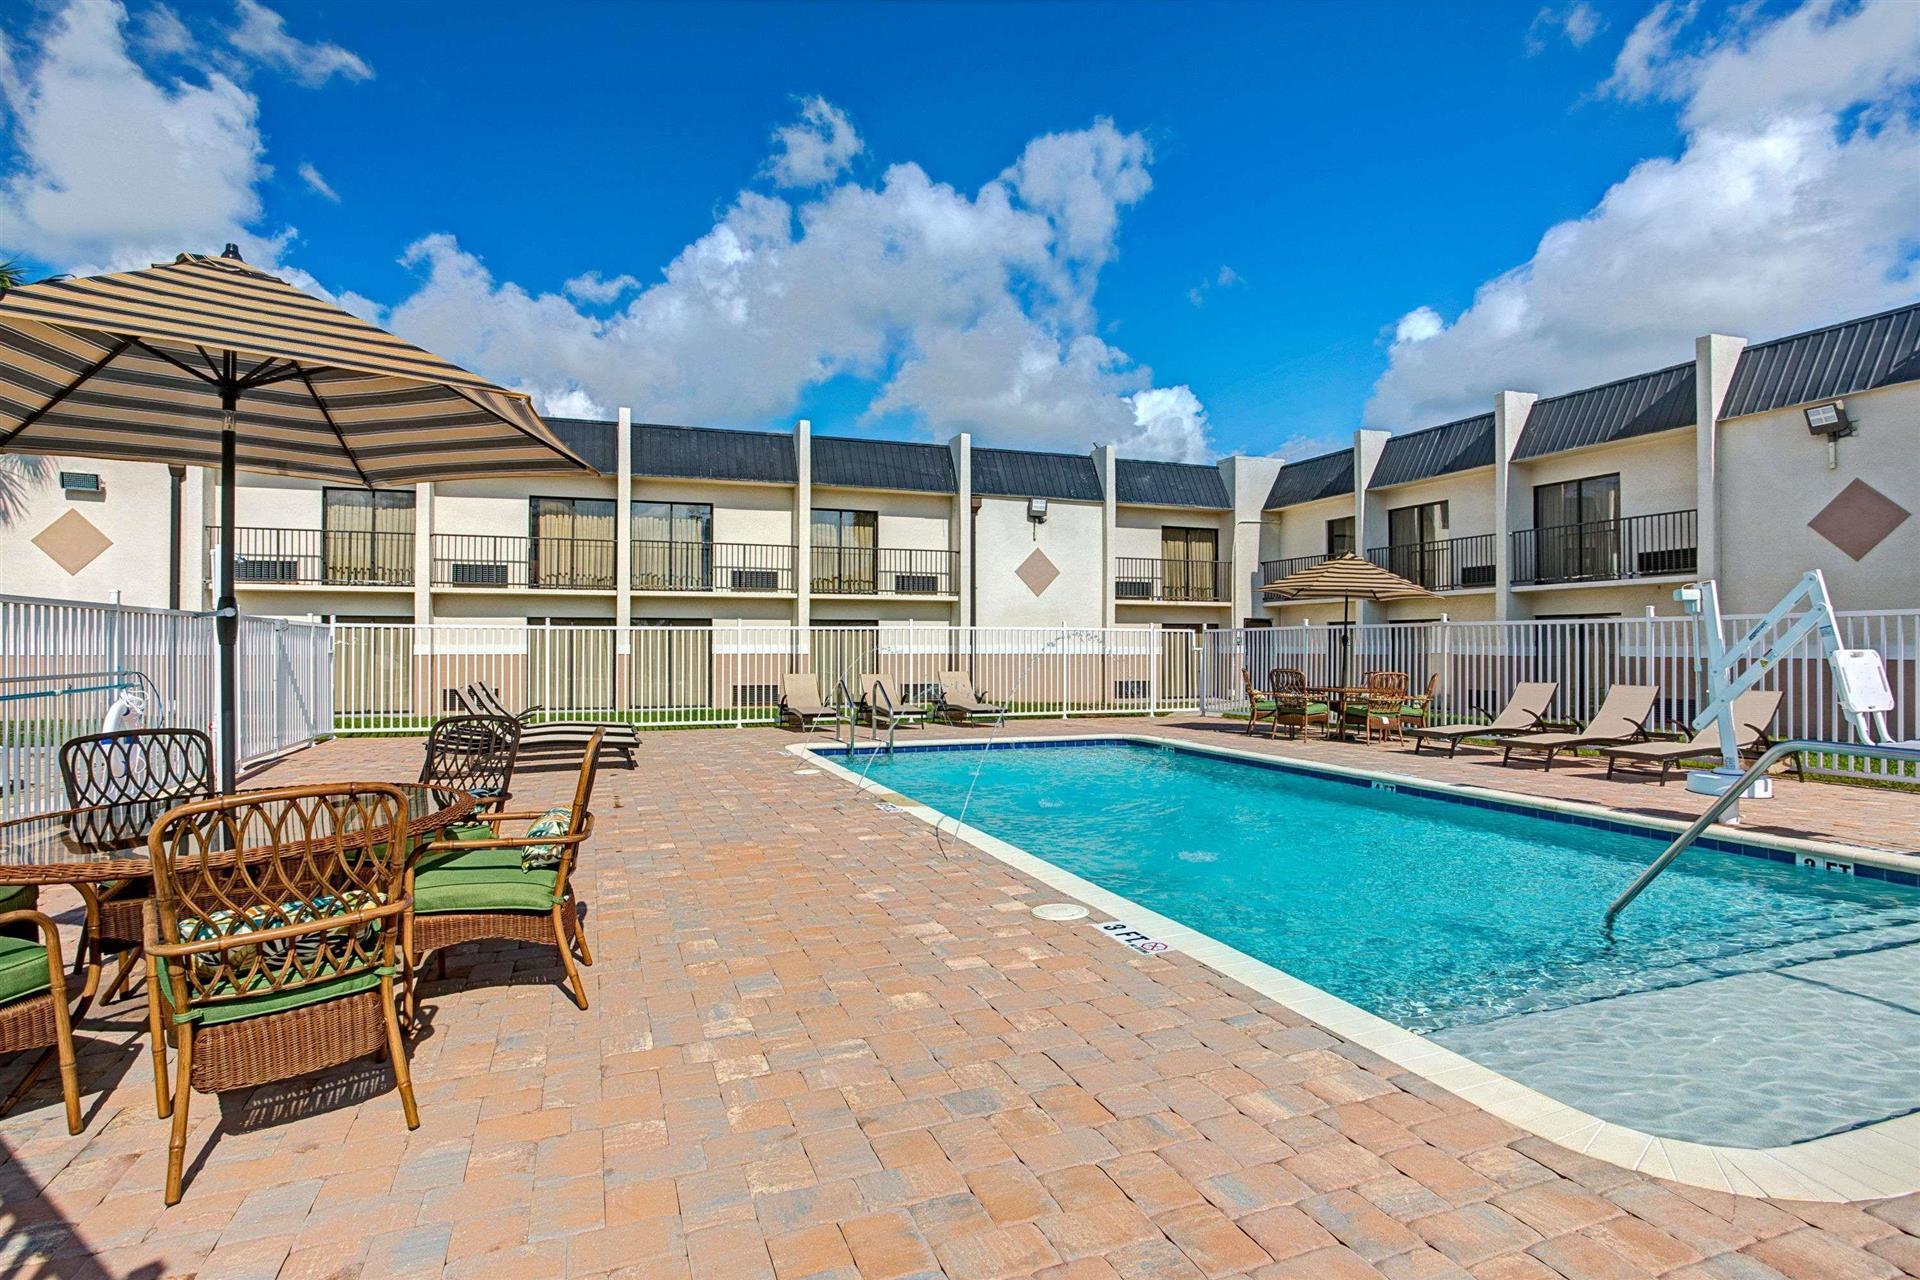 Days Inn & Suites by Wyndham Tampa near Ybor City in Tampa, FL